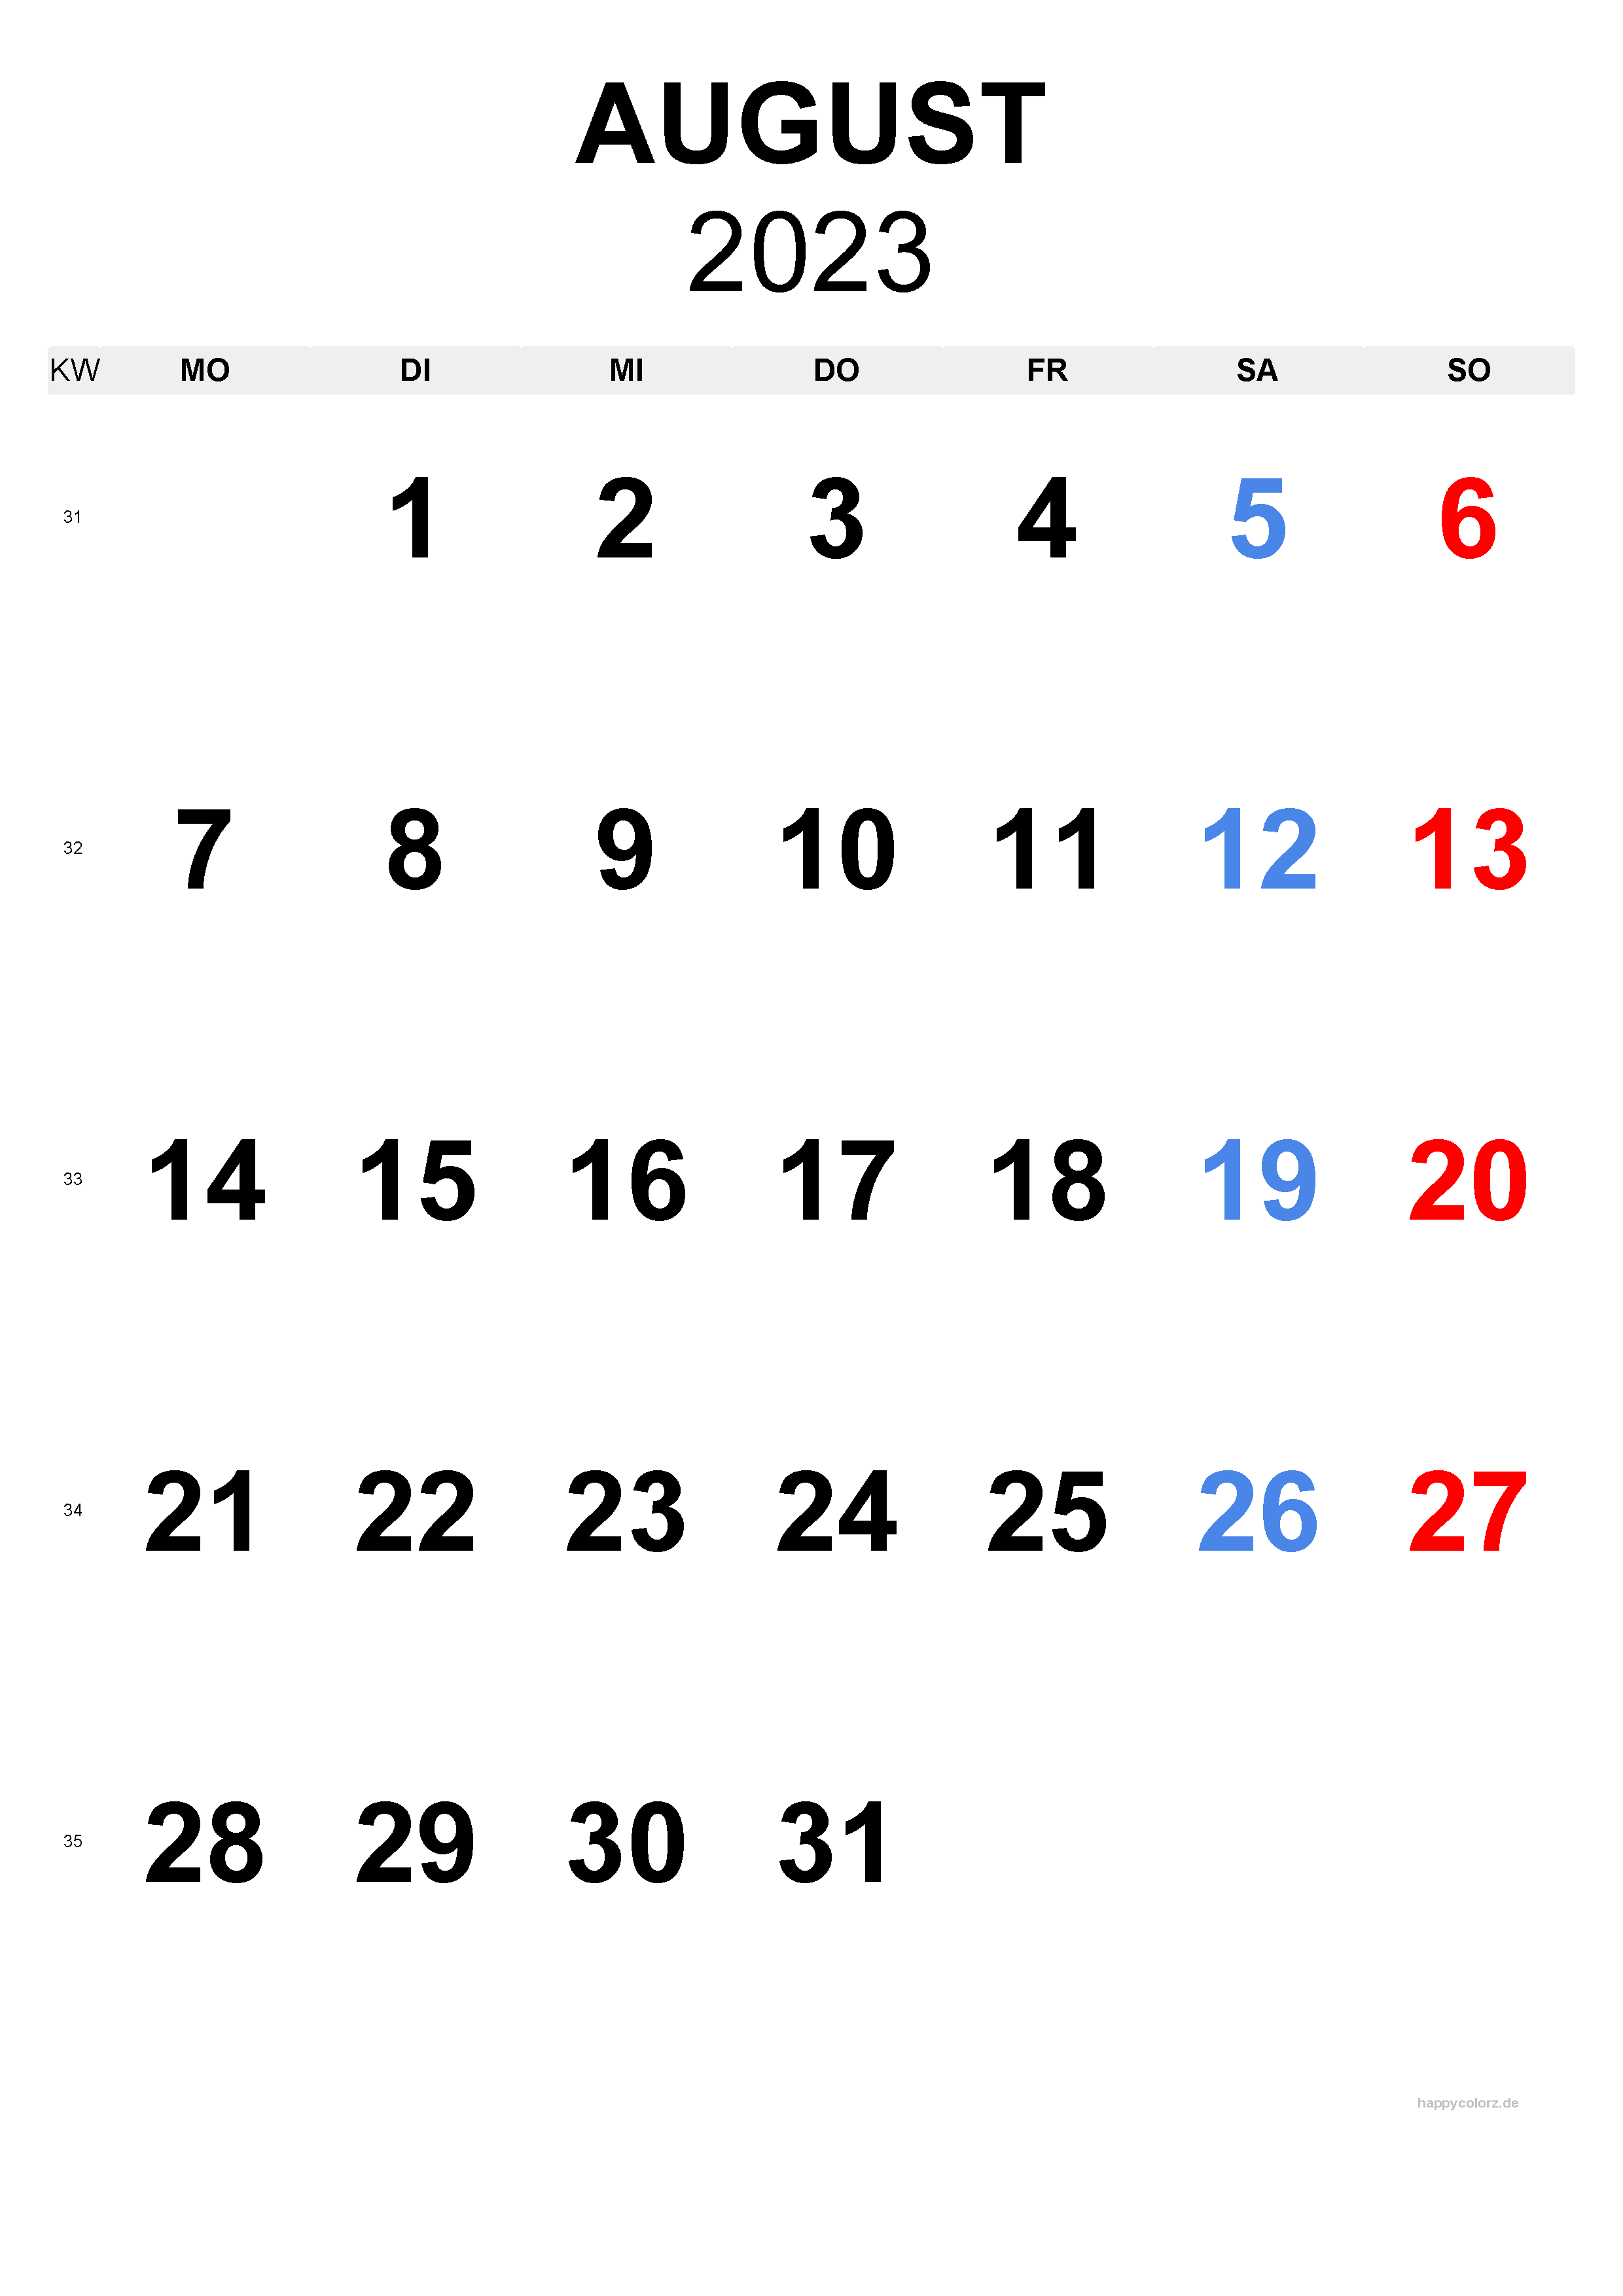 August 2023 Kalender - Hochformat, kostenlos zum Ausdrucken